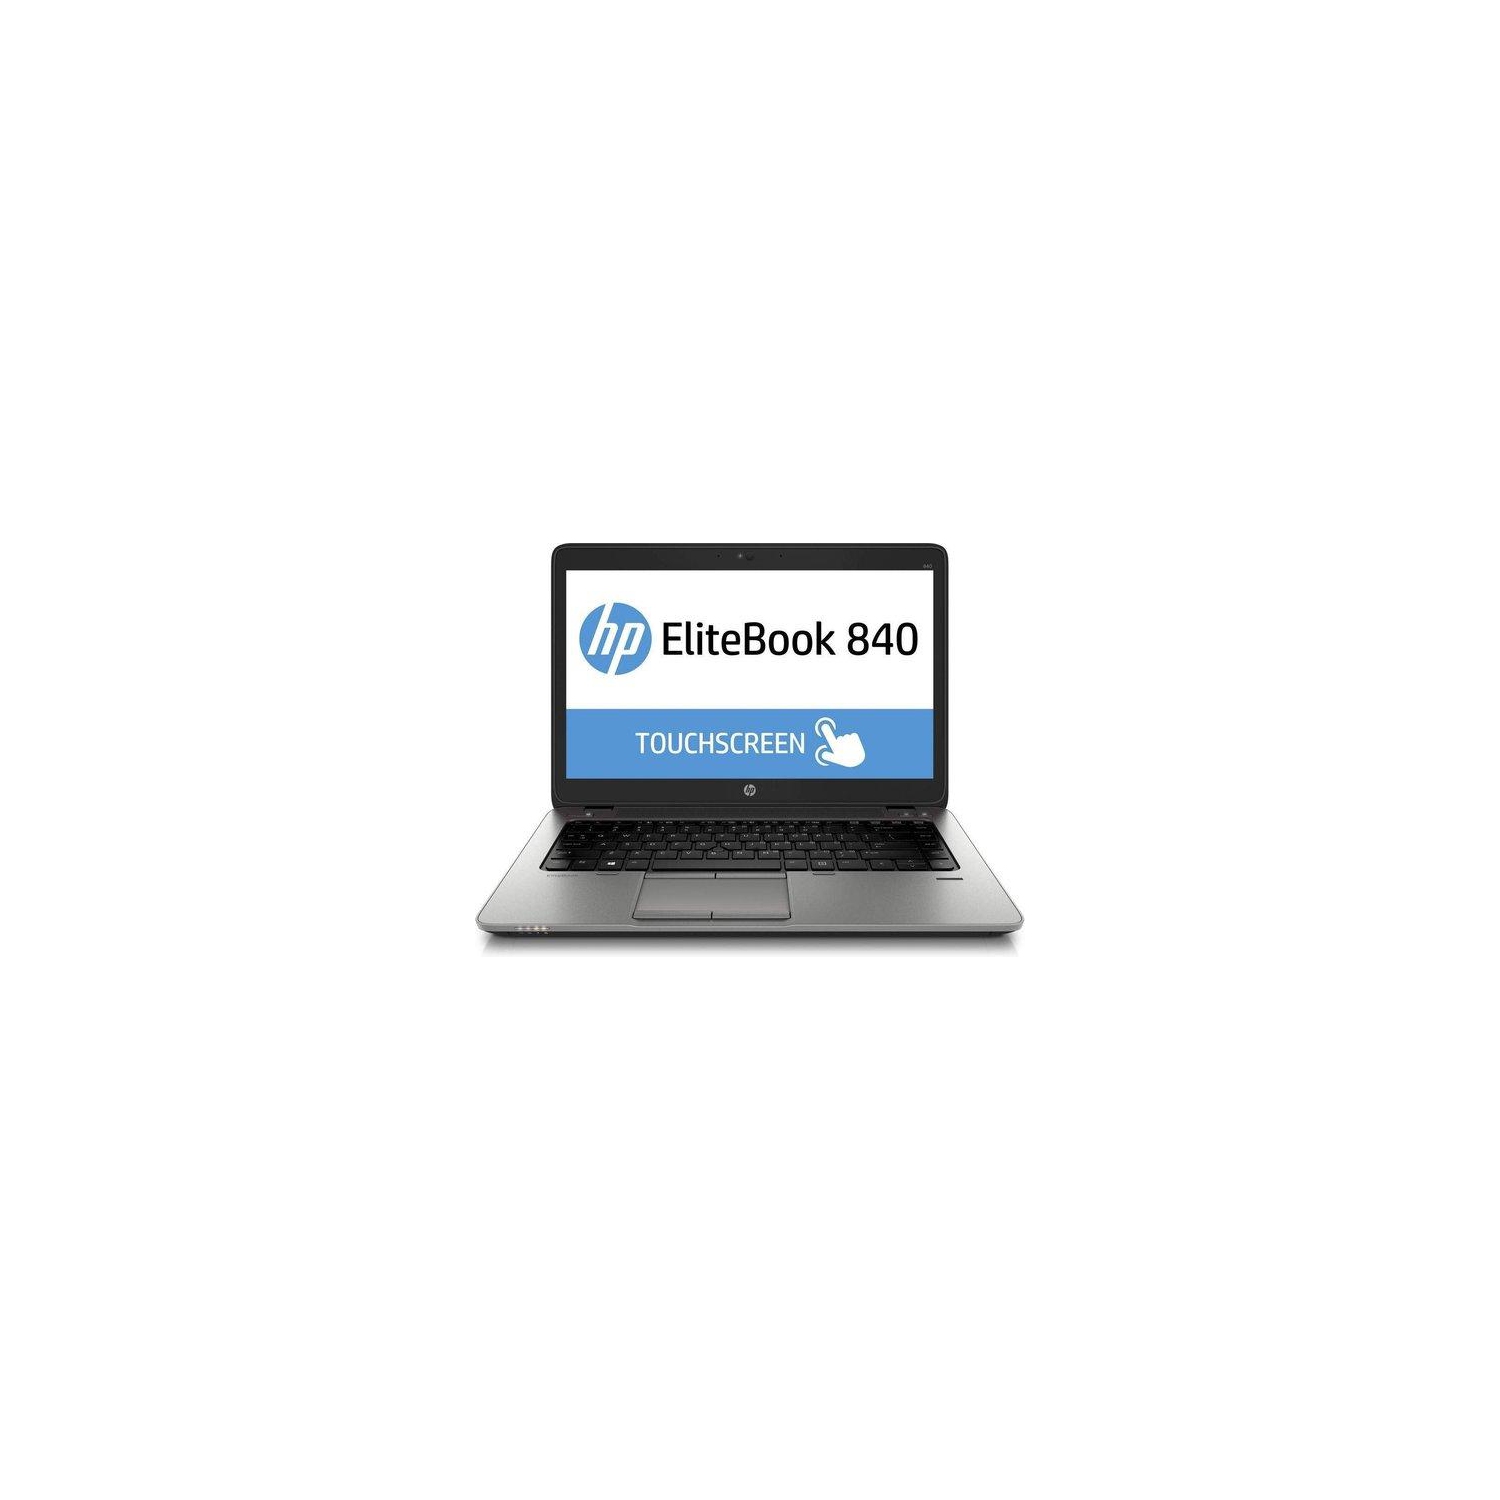 Refurbished (Good) - HP EliteBook 840 G3 14" FHD Business Laptop: i5-6200u 2.3GHz; 16G RAM; 512G SSD; Webcam; Backlit Keyboard, Win10 pro "“